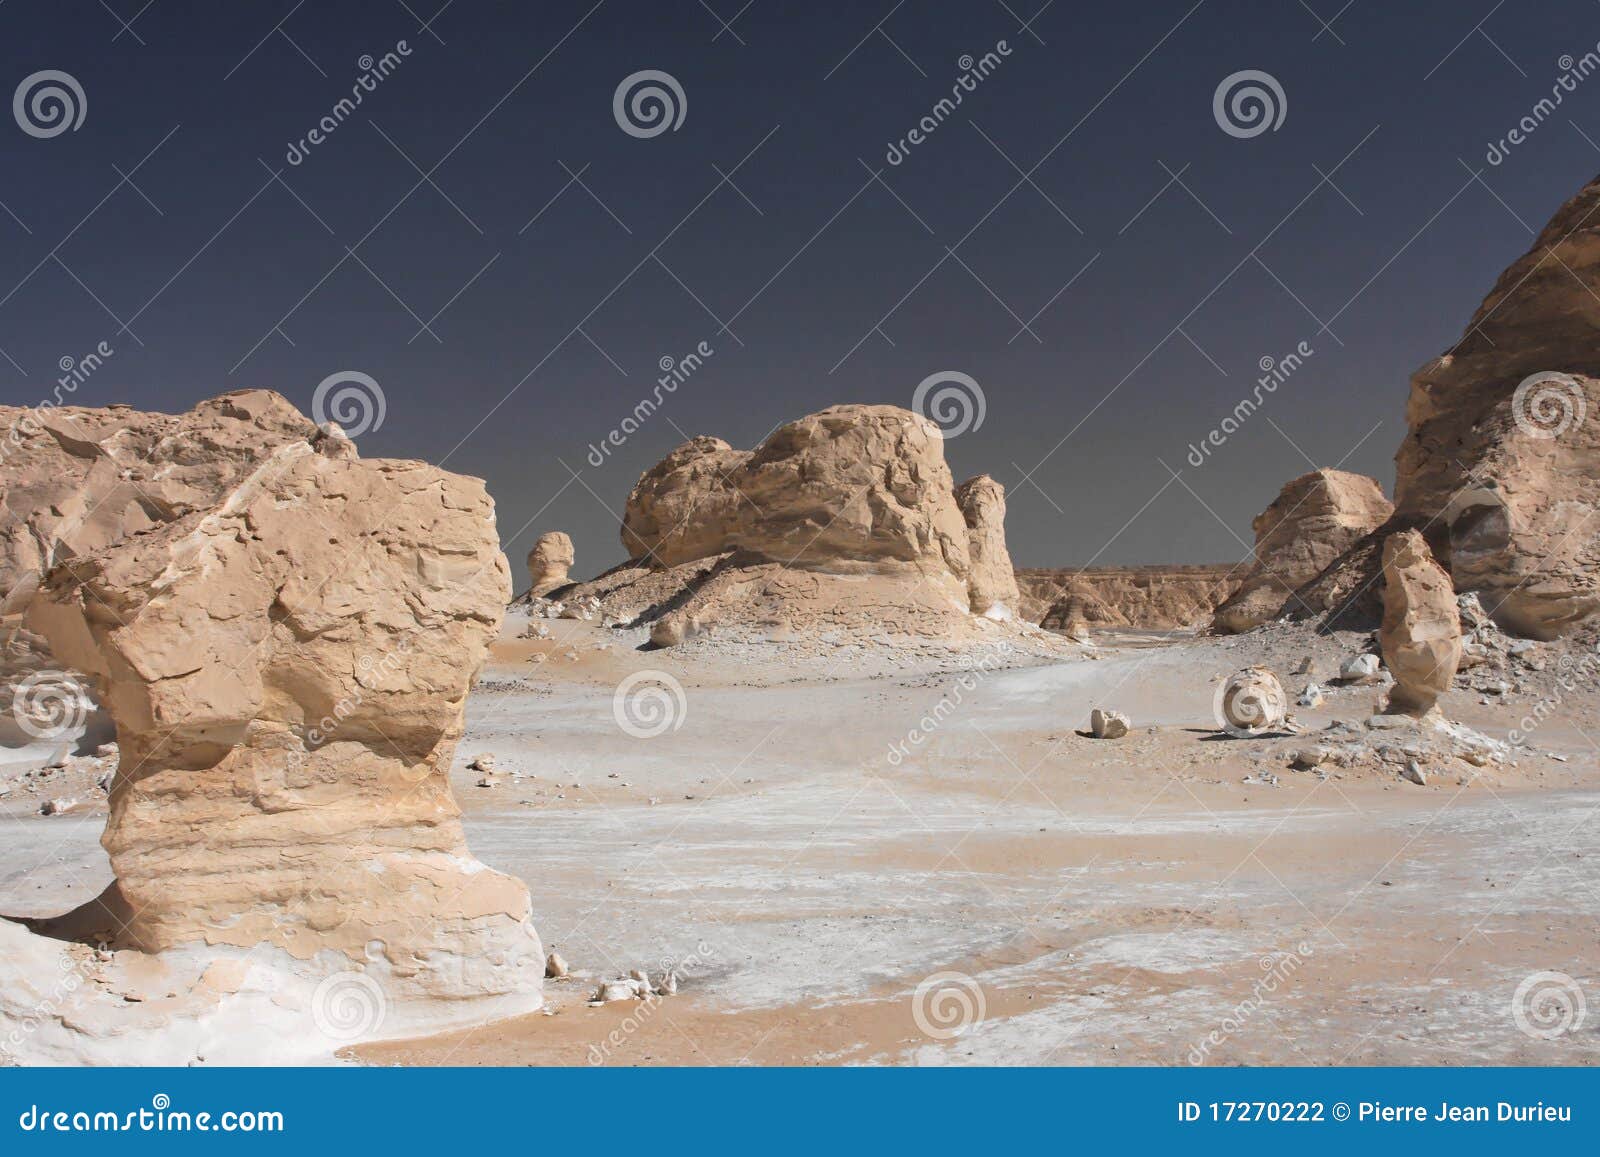 white rocks in libyan desert